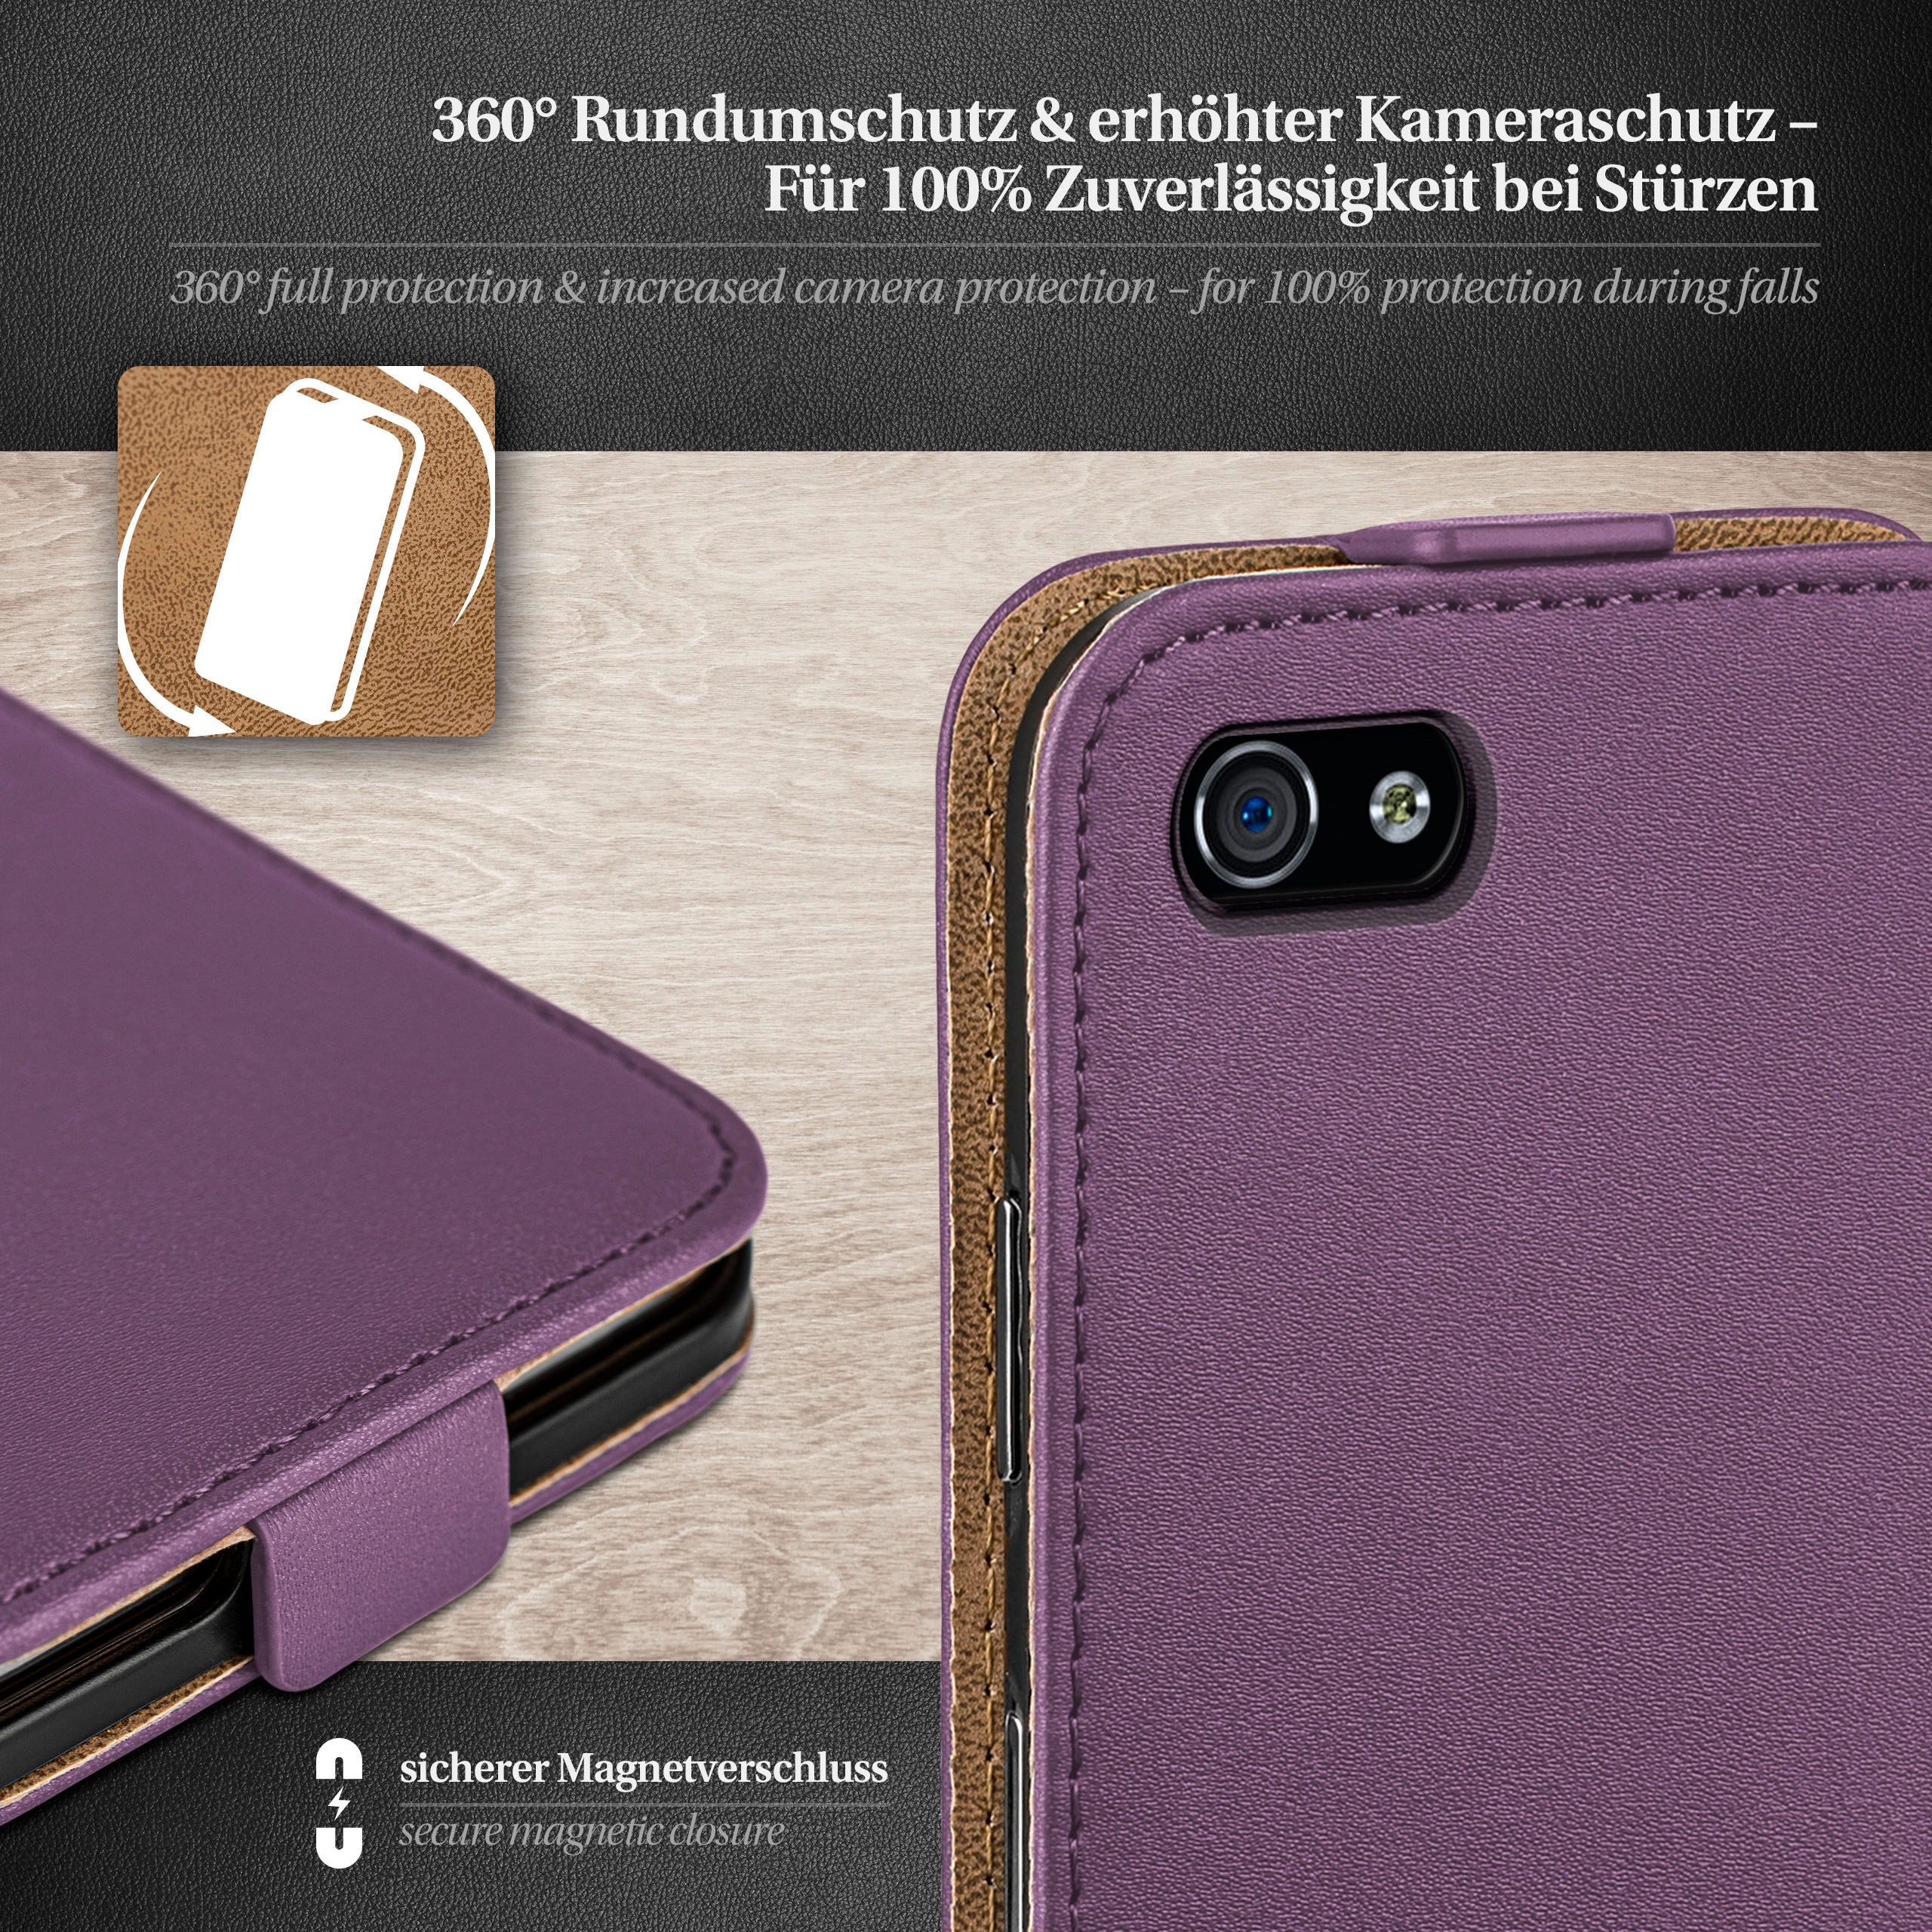 iPhone Apple, / 4, Indigo-Violet Case, MOEX Flip Flip Cover, iPhone 4s